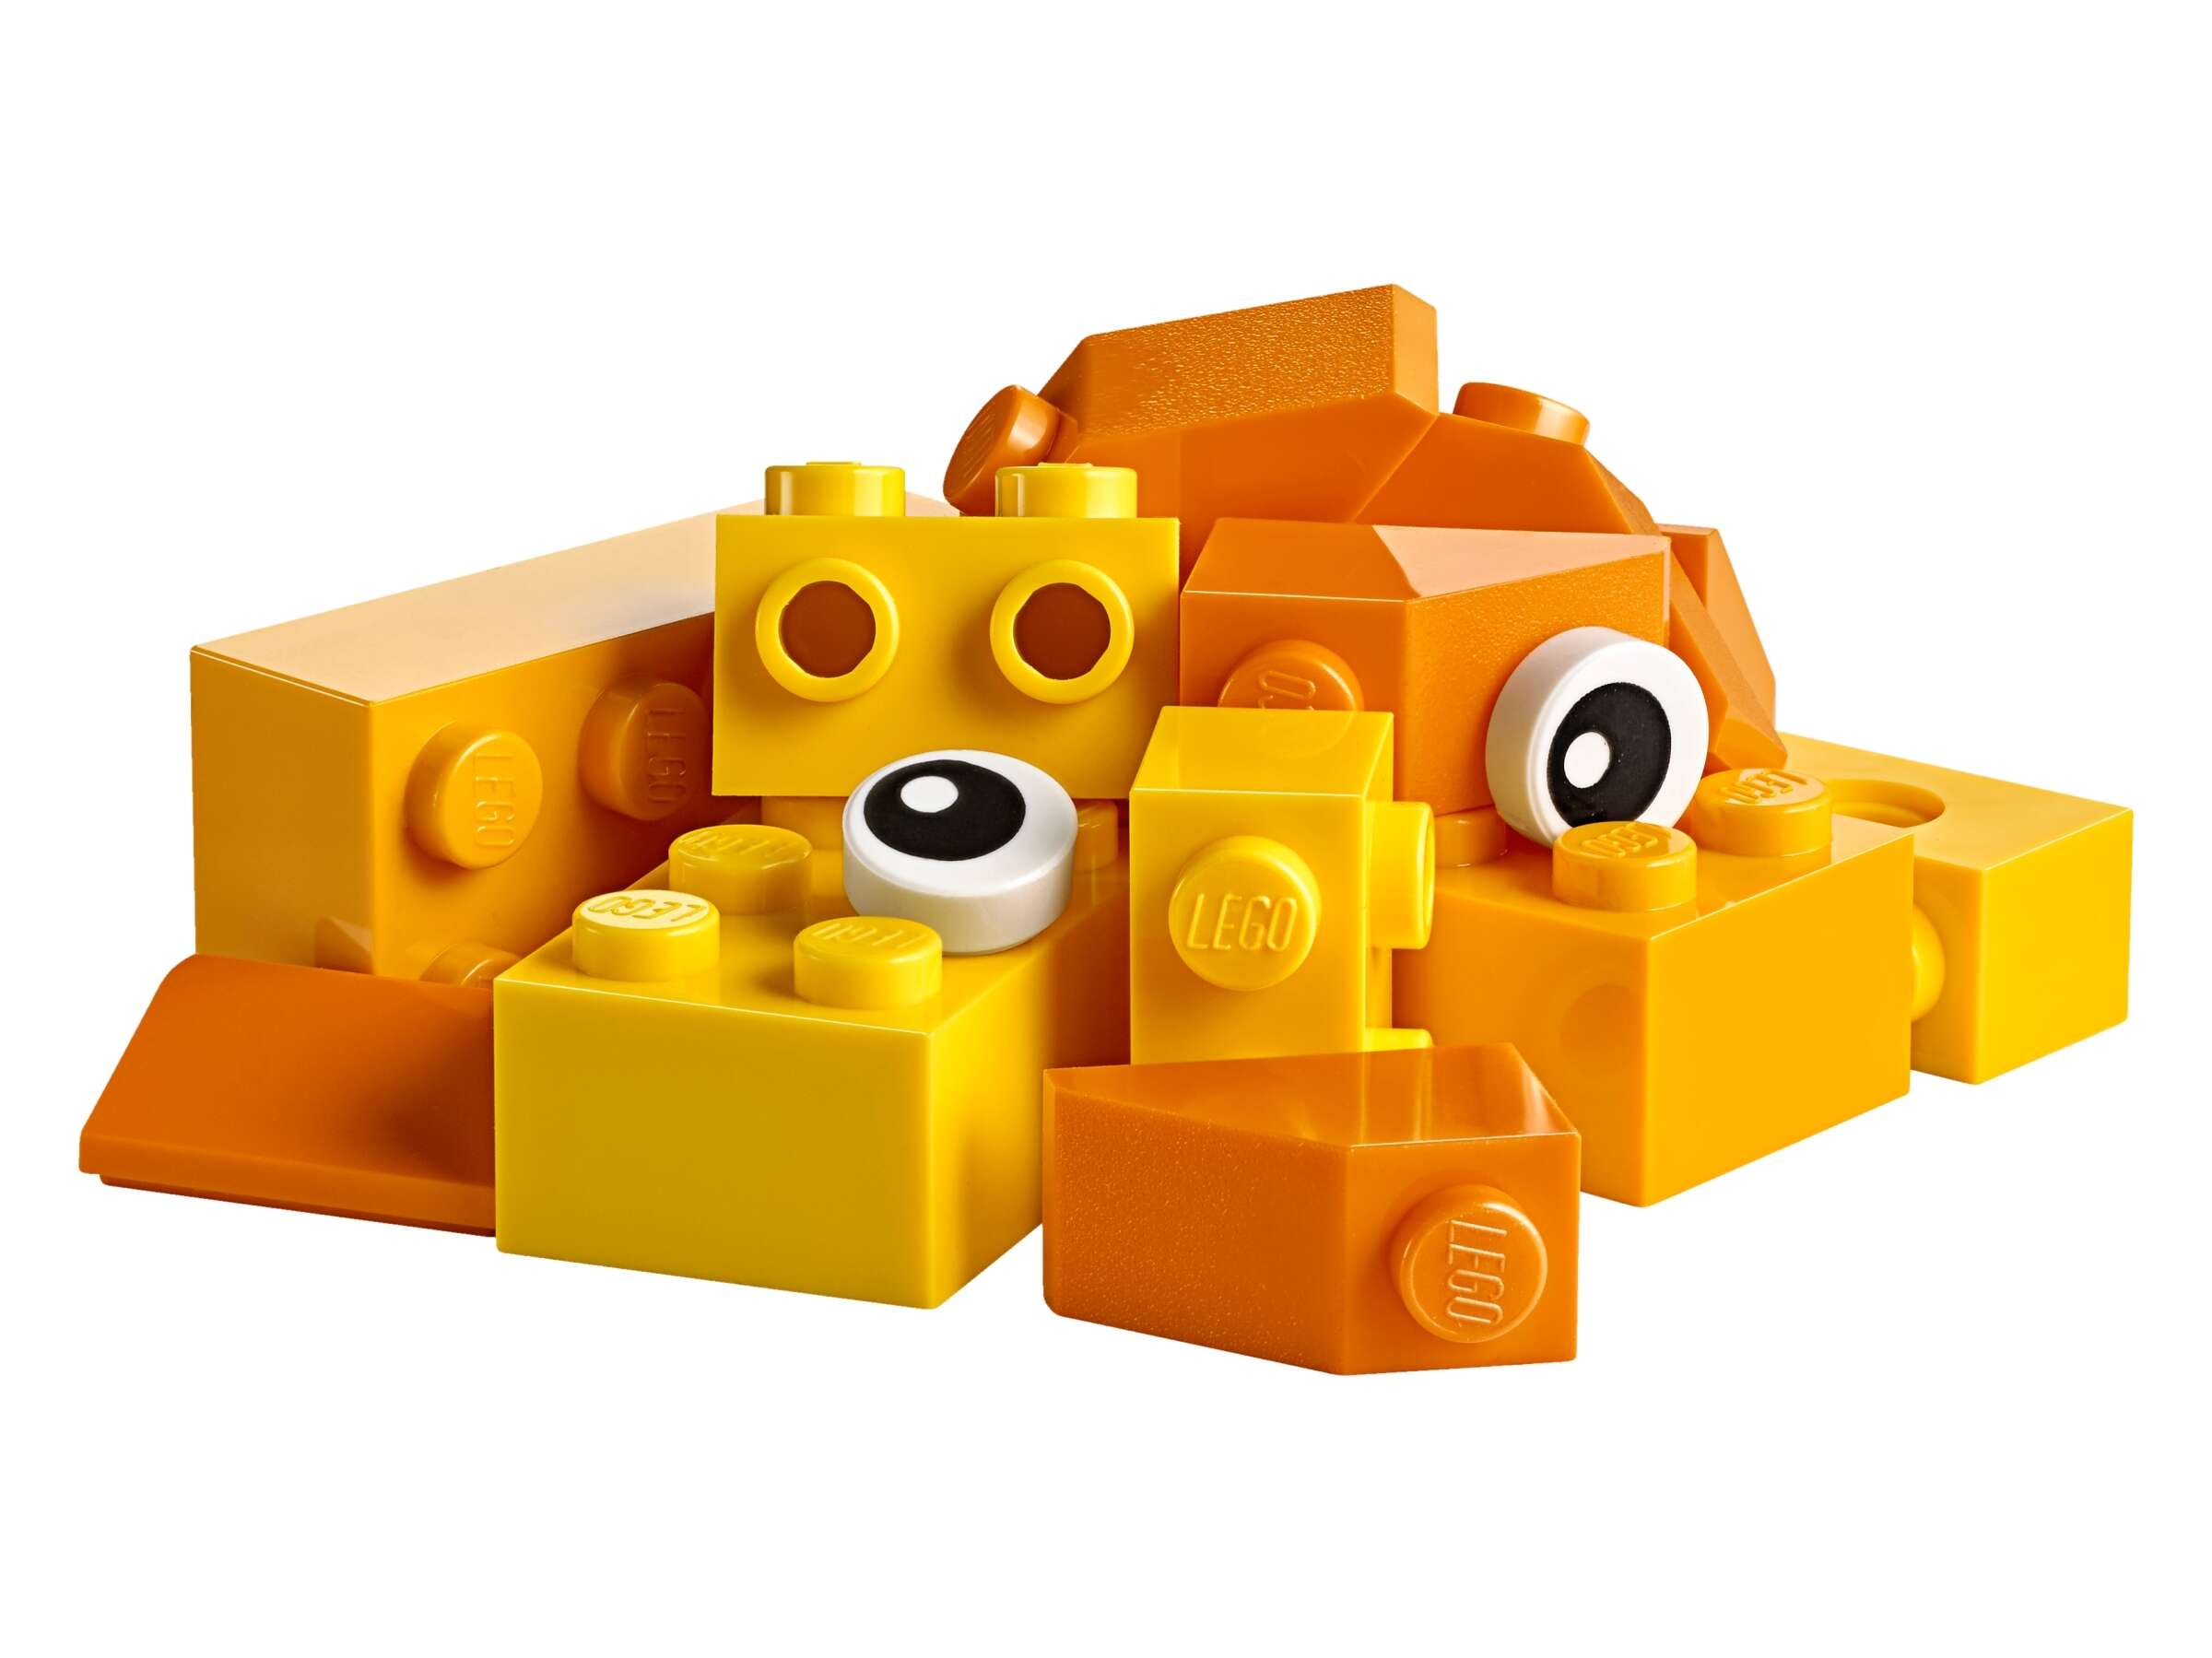 LEGO 10713 Classic Bausteine Starterkoffer – Farben Sortieren, Räder, Augen